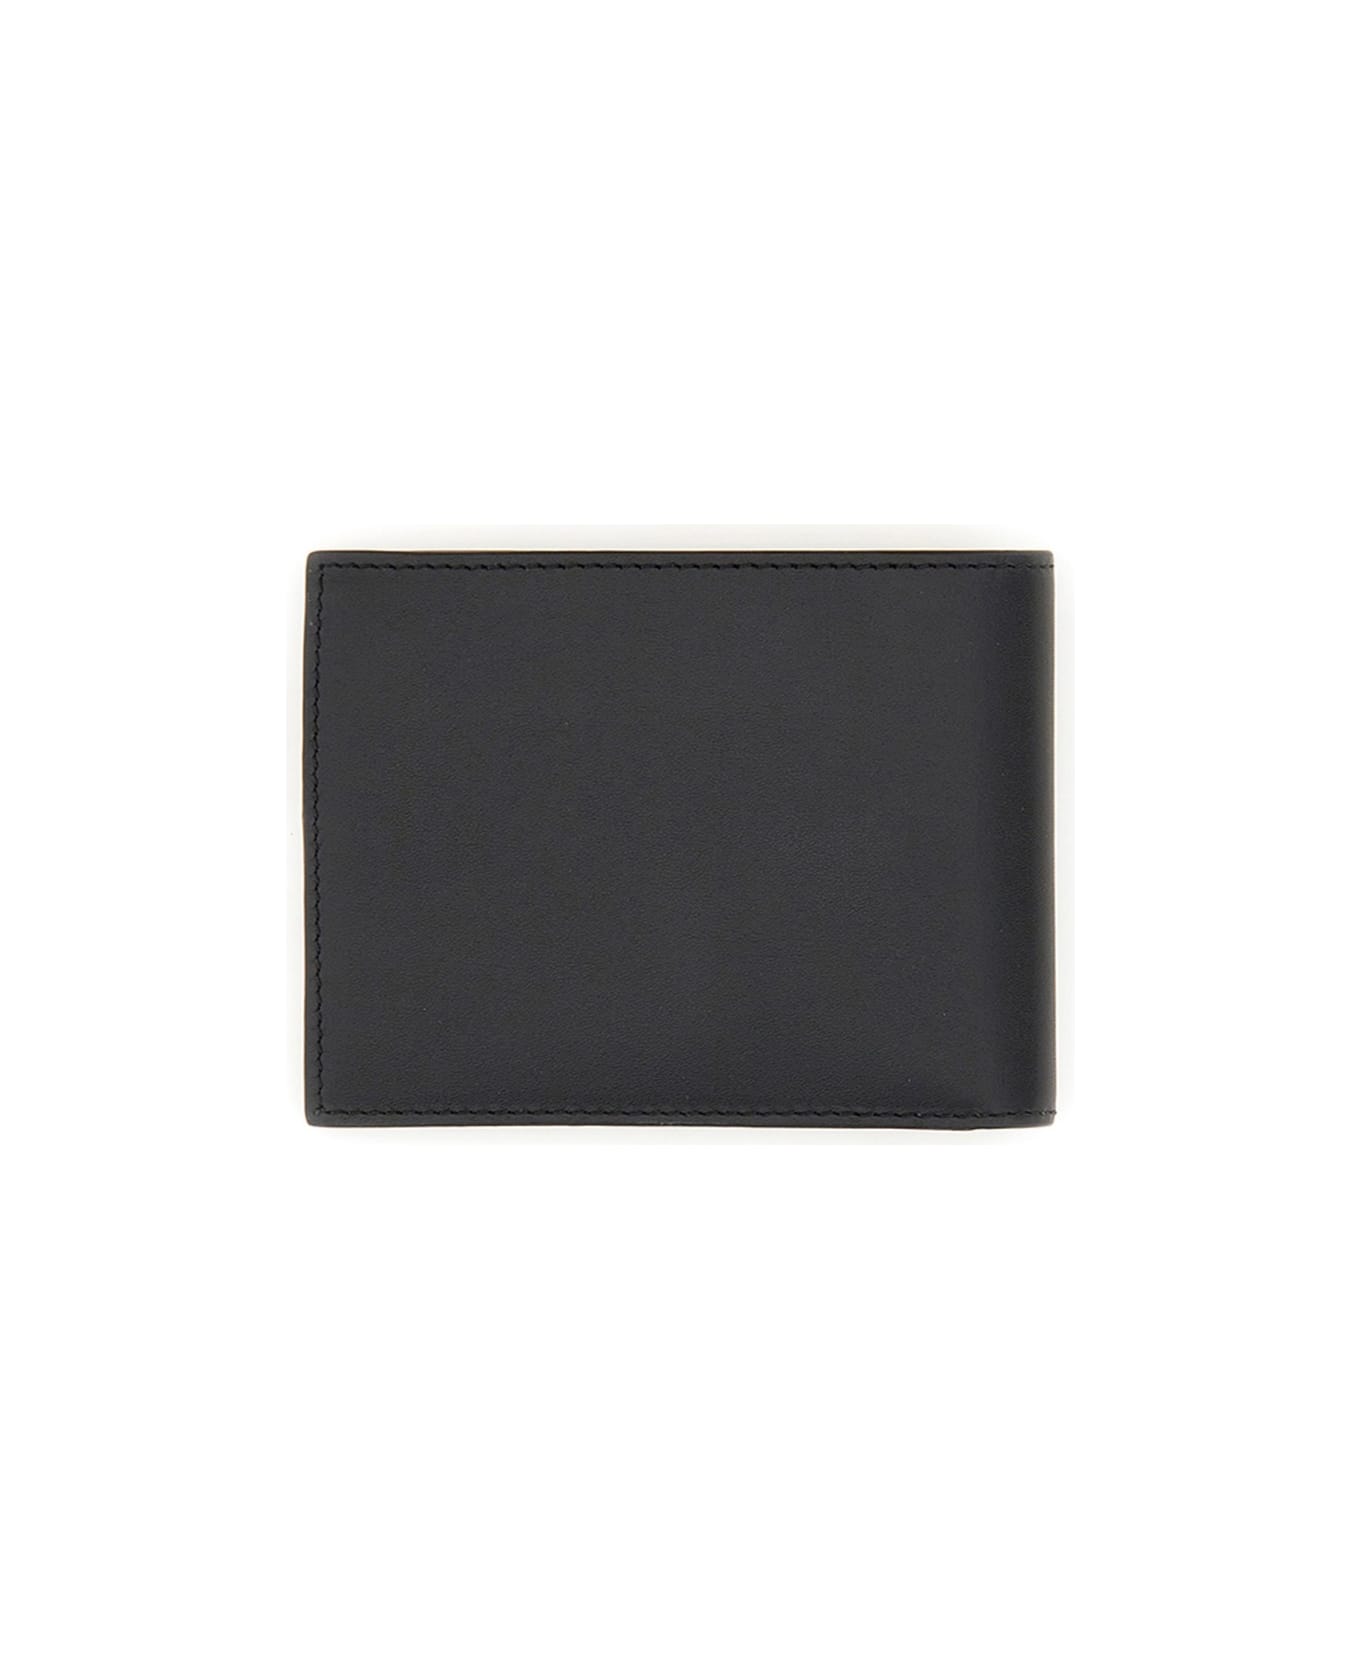 Paul Smith Bi-fold Leather Wallet - BLACK